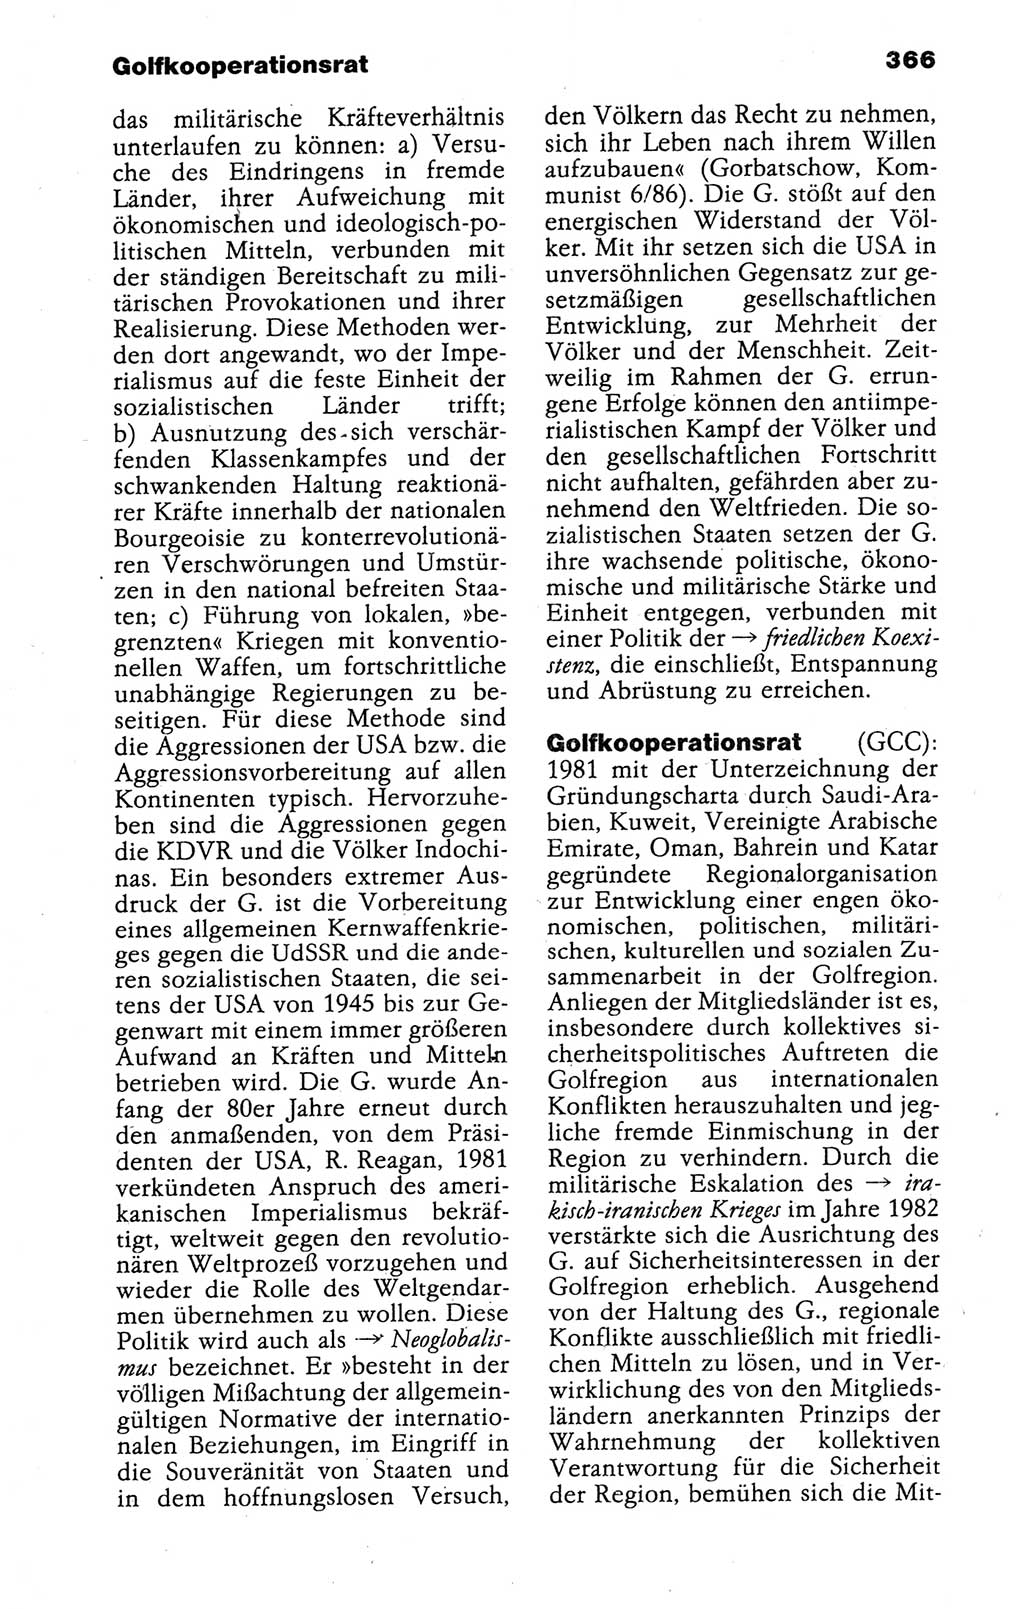 Kleines politisches Wörterbuch [Deutsche Demokratische Republik (DDR)] 1988, Seite 366 (Kl. pol. Wb. DDR 1988, S. 366)